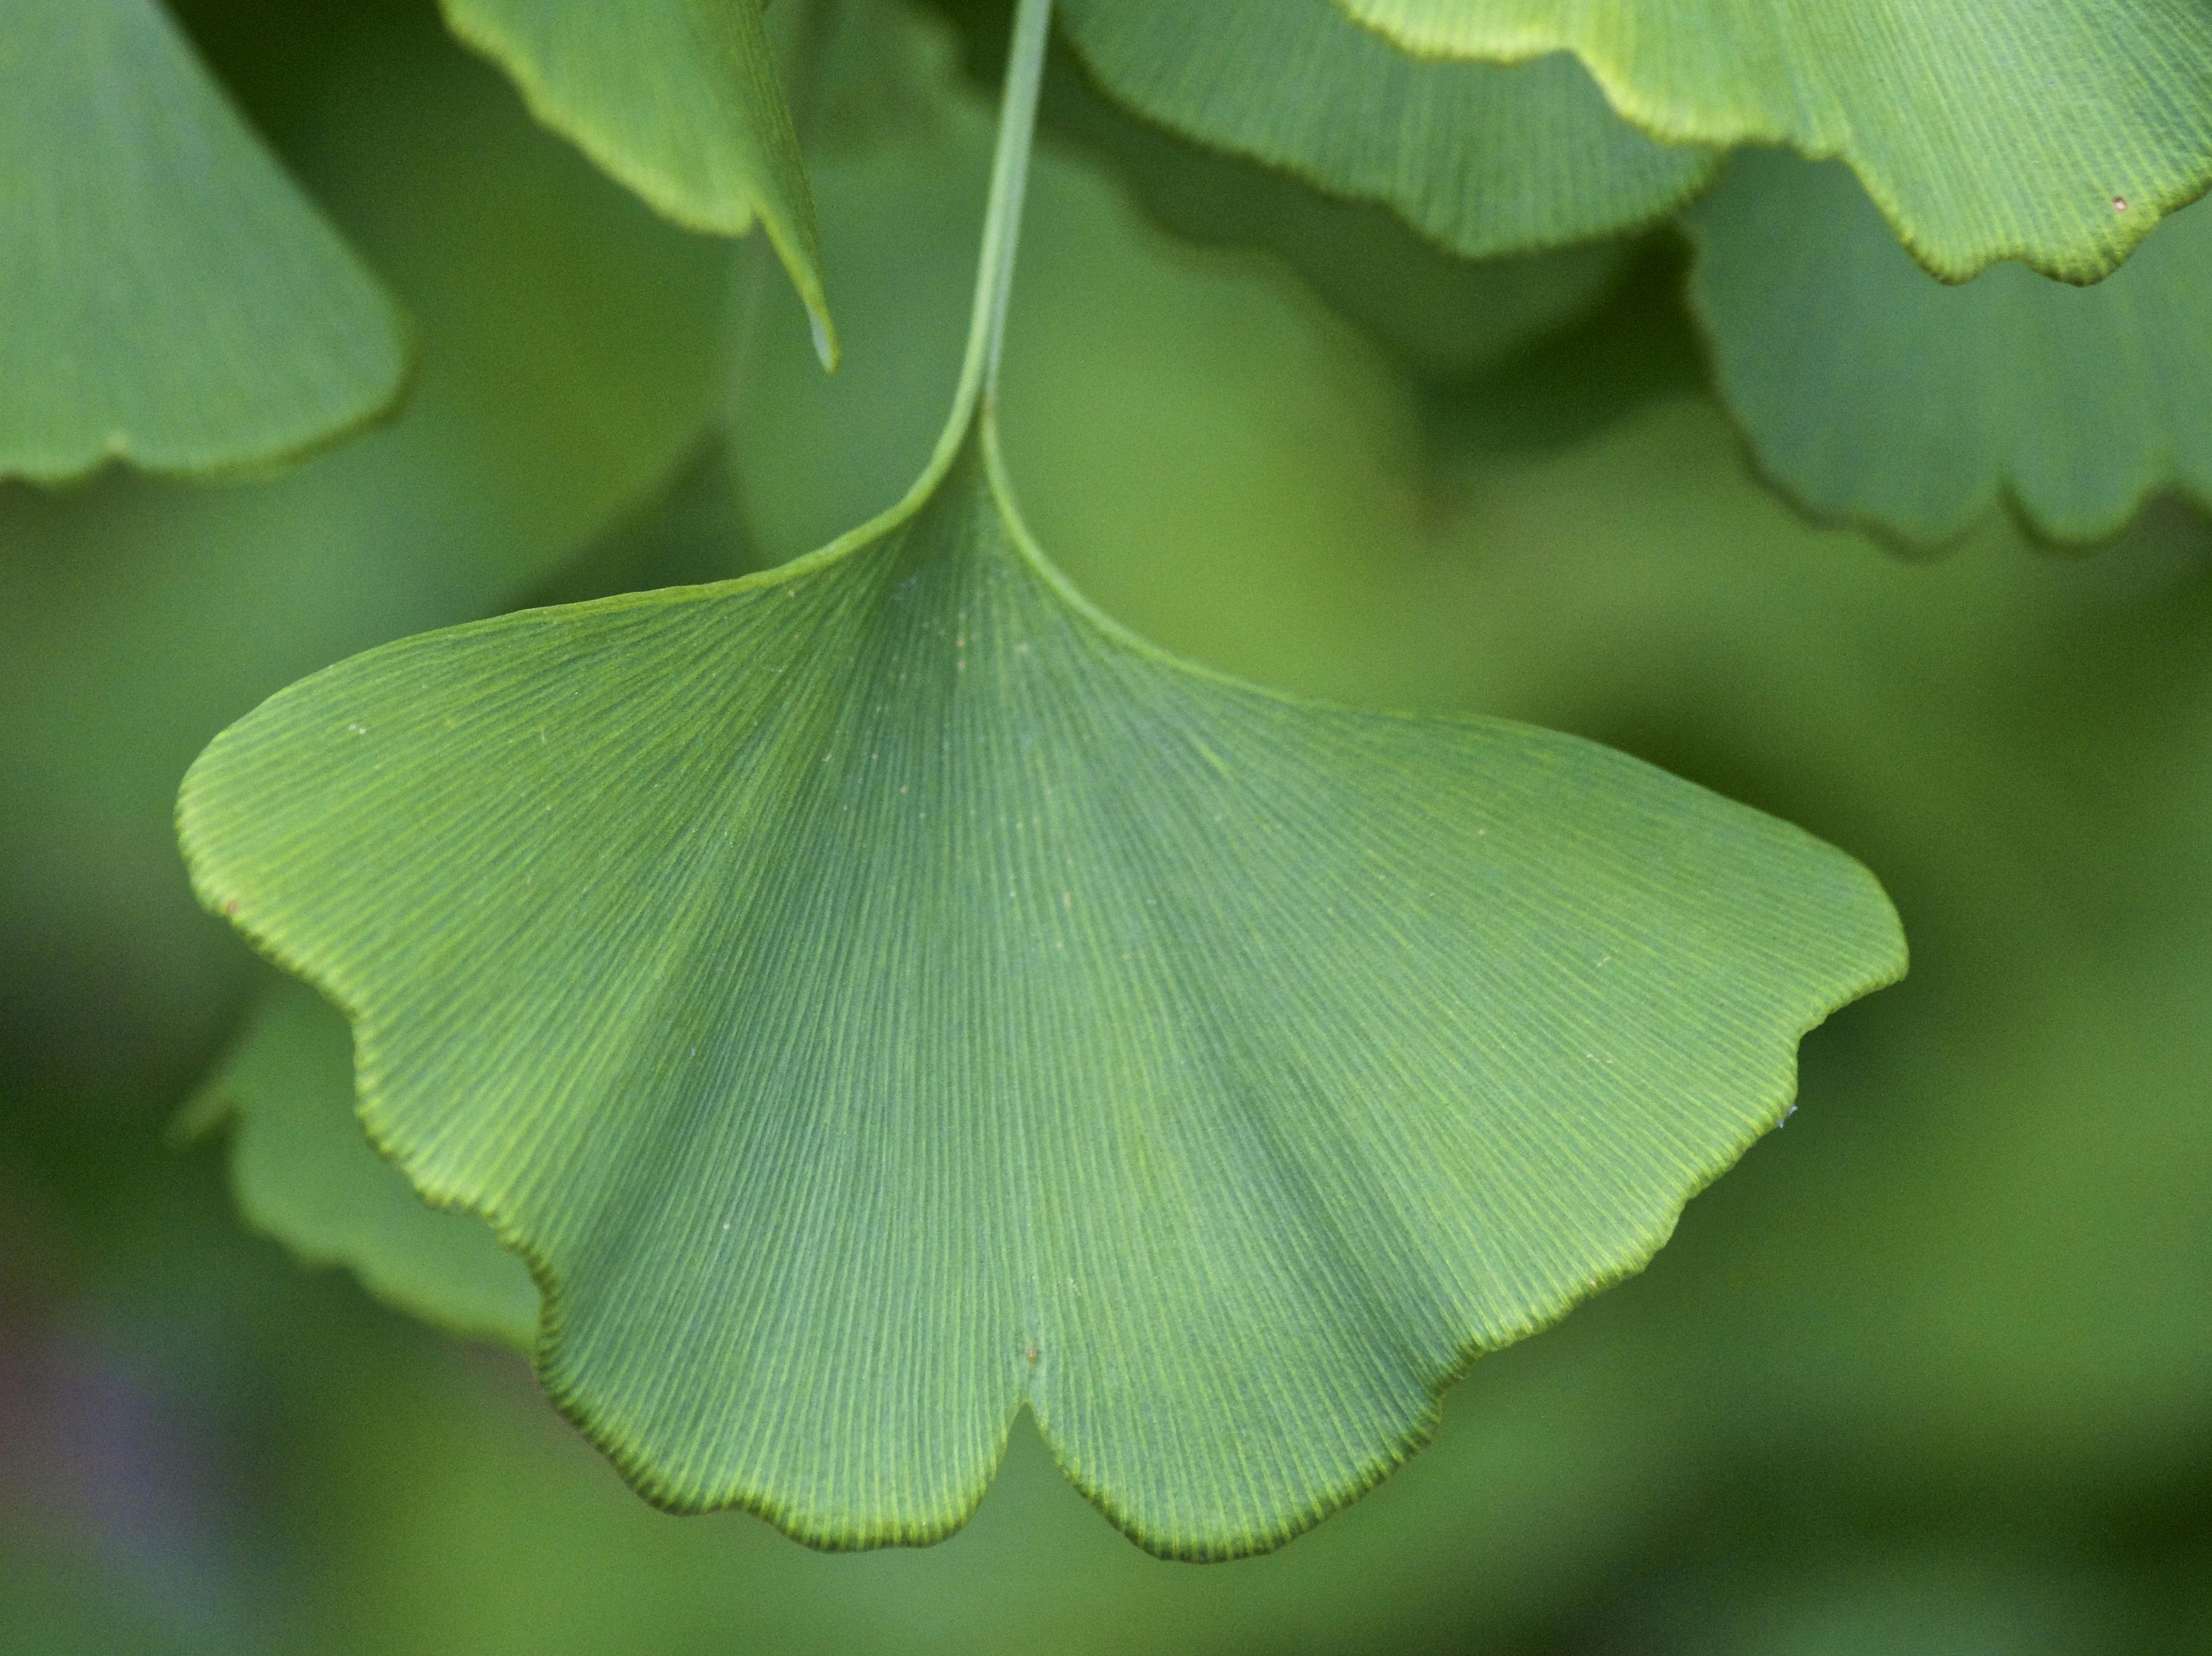 Gingko leaf